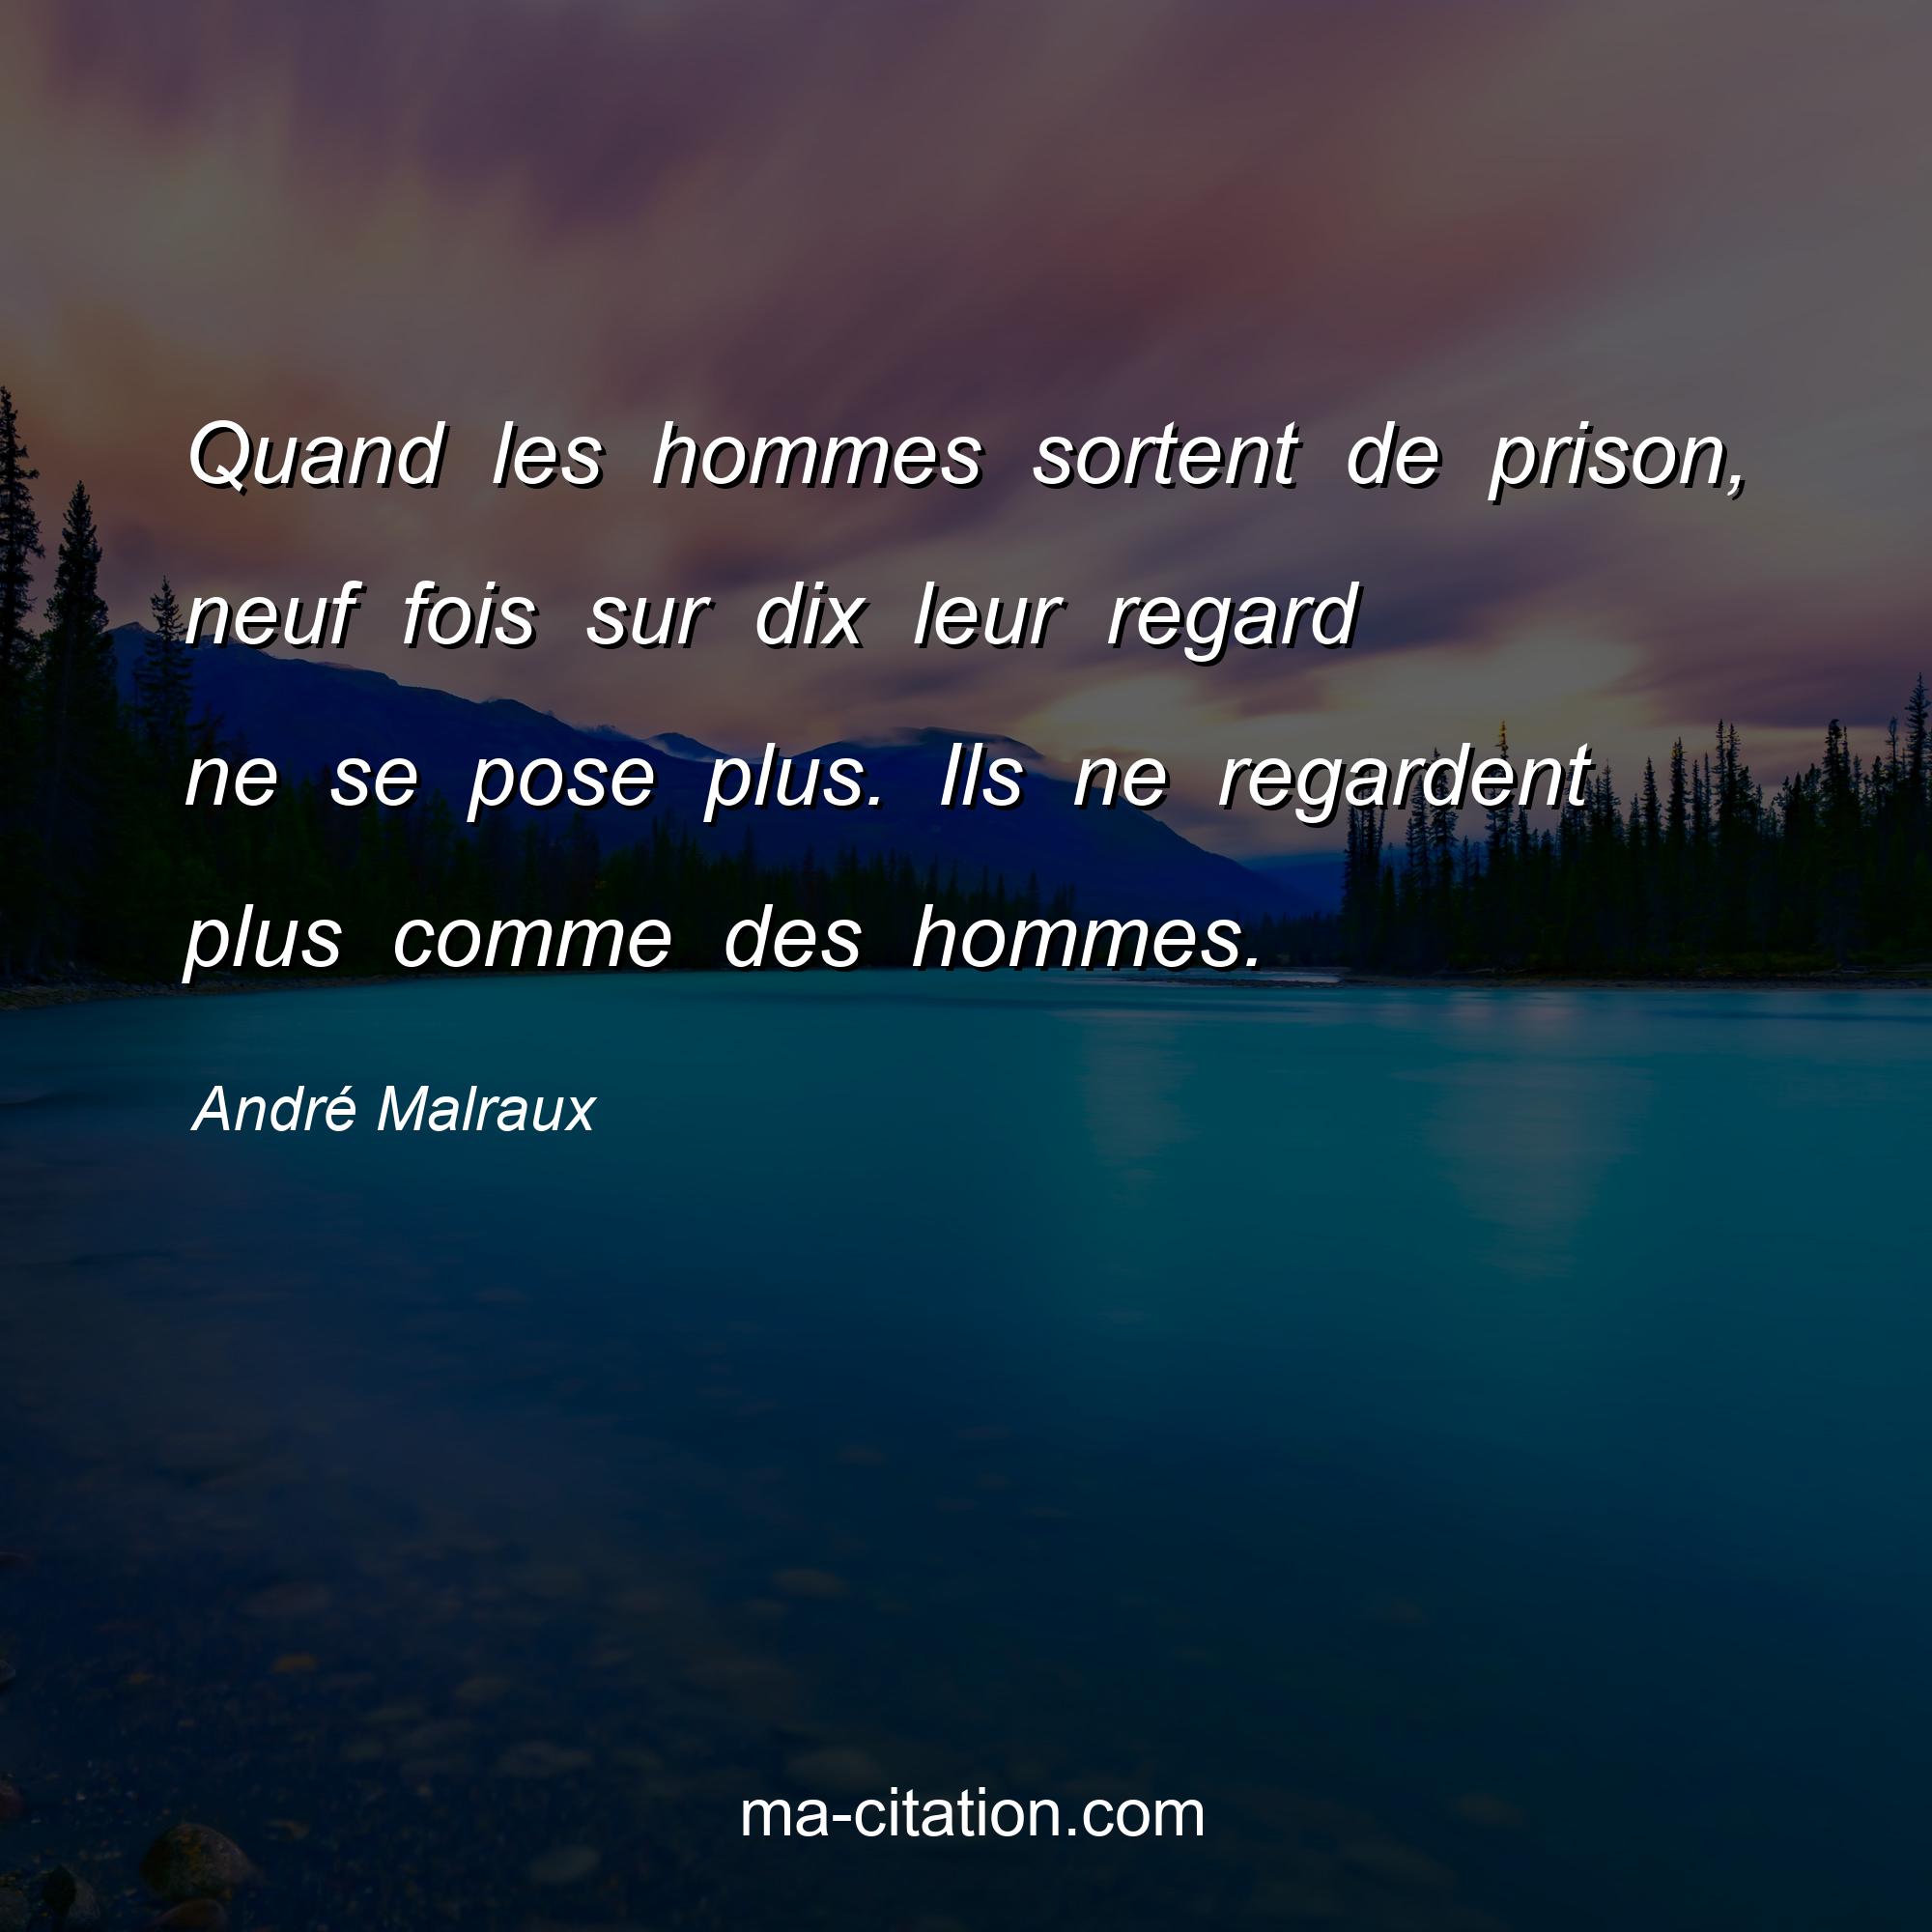 André Malraux : Quand les hommes sortent de prison, neuf fois sur dix leur regard ne se pose plus. Ils ne regardent plus comme des hommes.